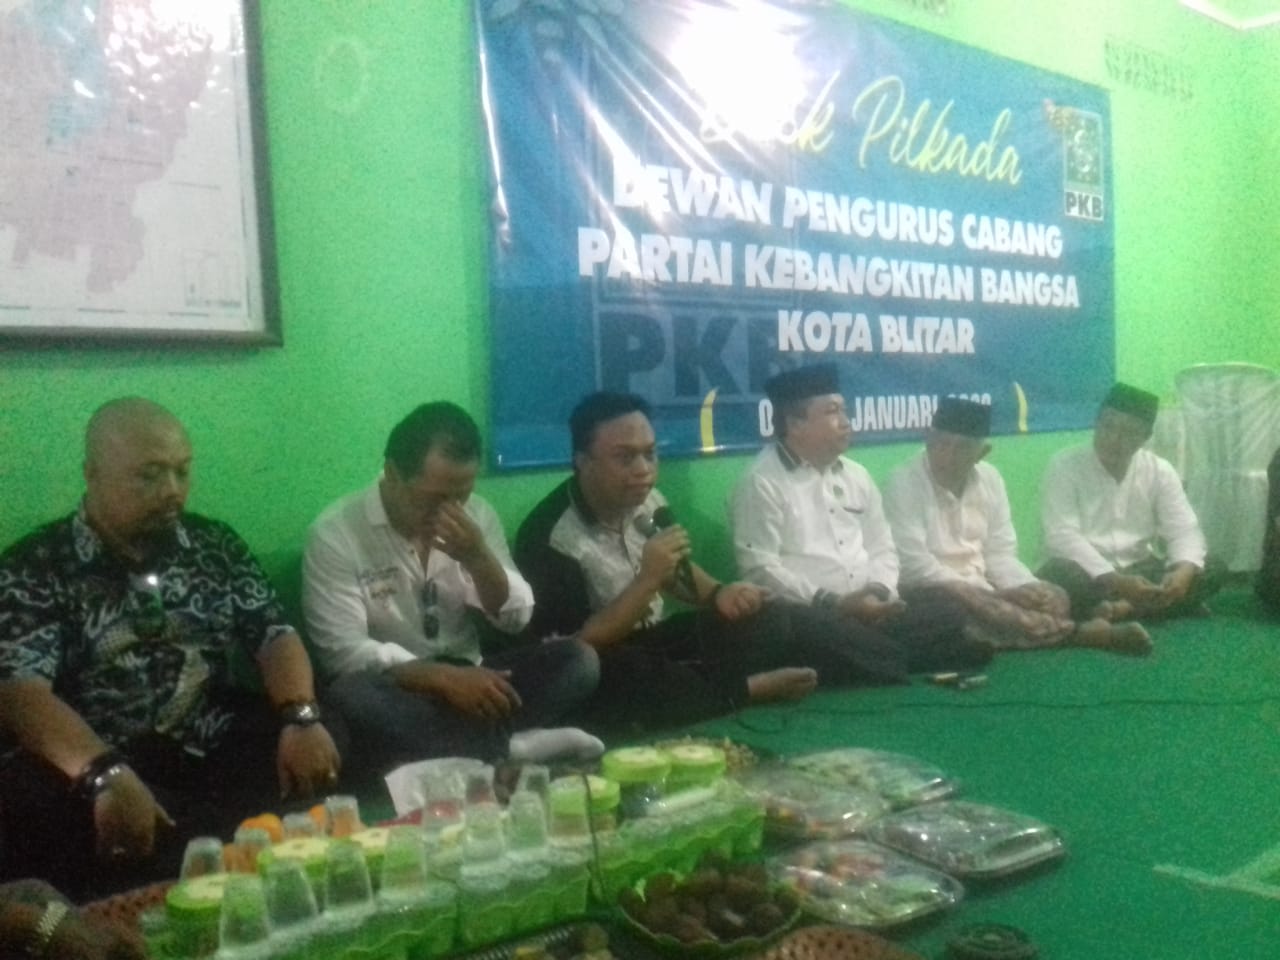 Hendry Pradipta Anwar Anak dari Samanhudi Anwar Walkot non aktif Kota Blitar saat mendaftar di kantor PKB